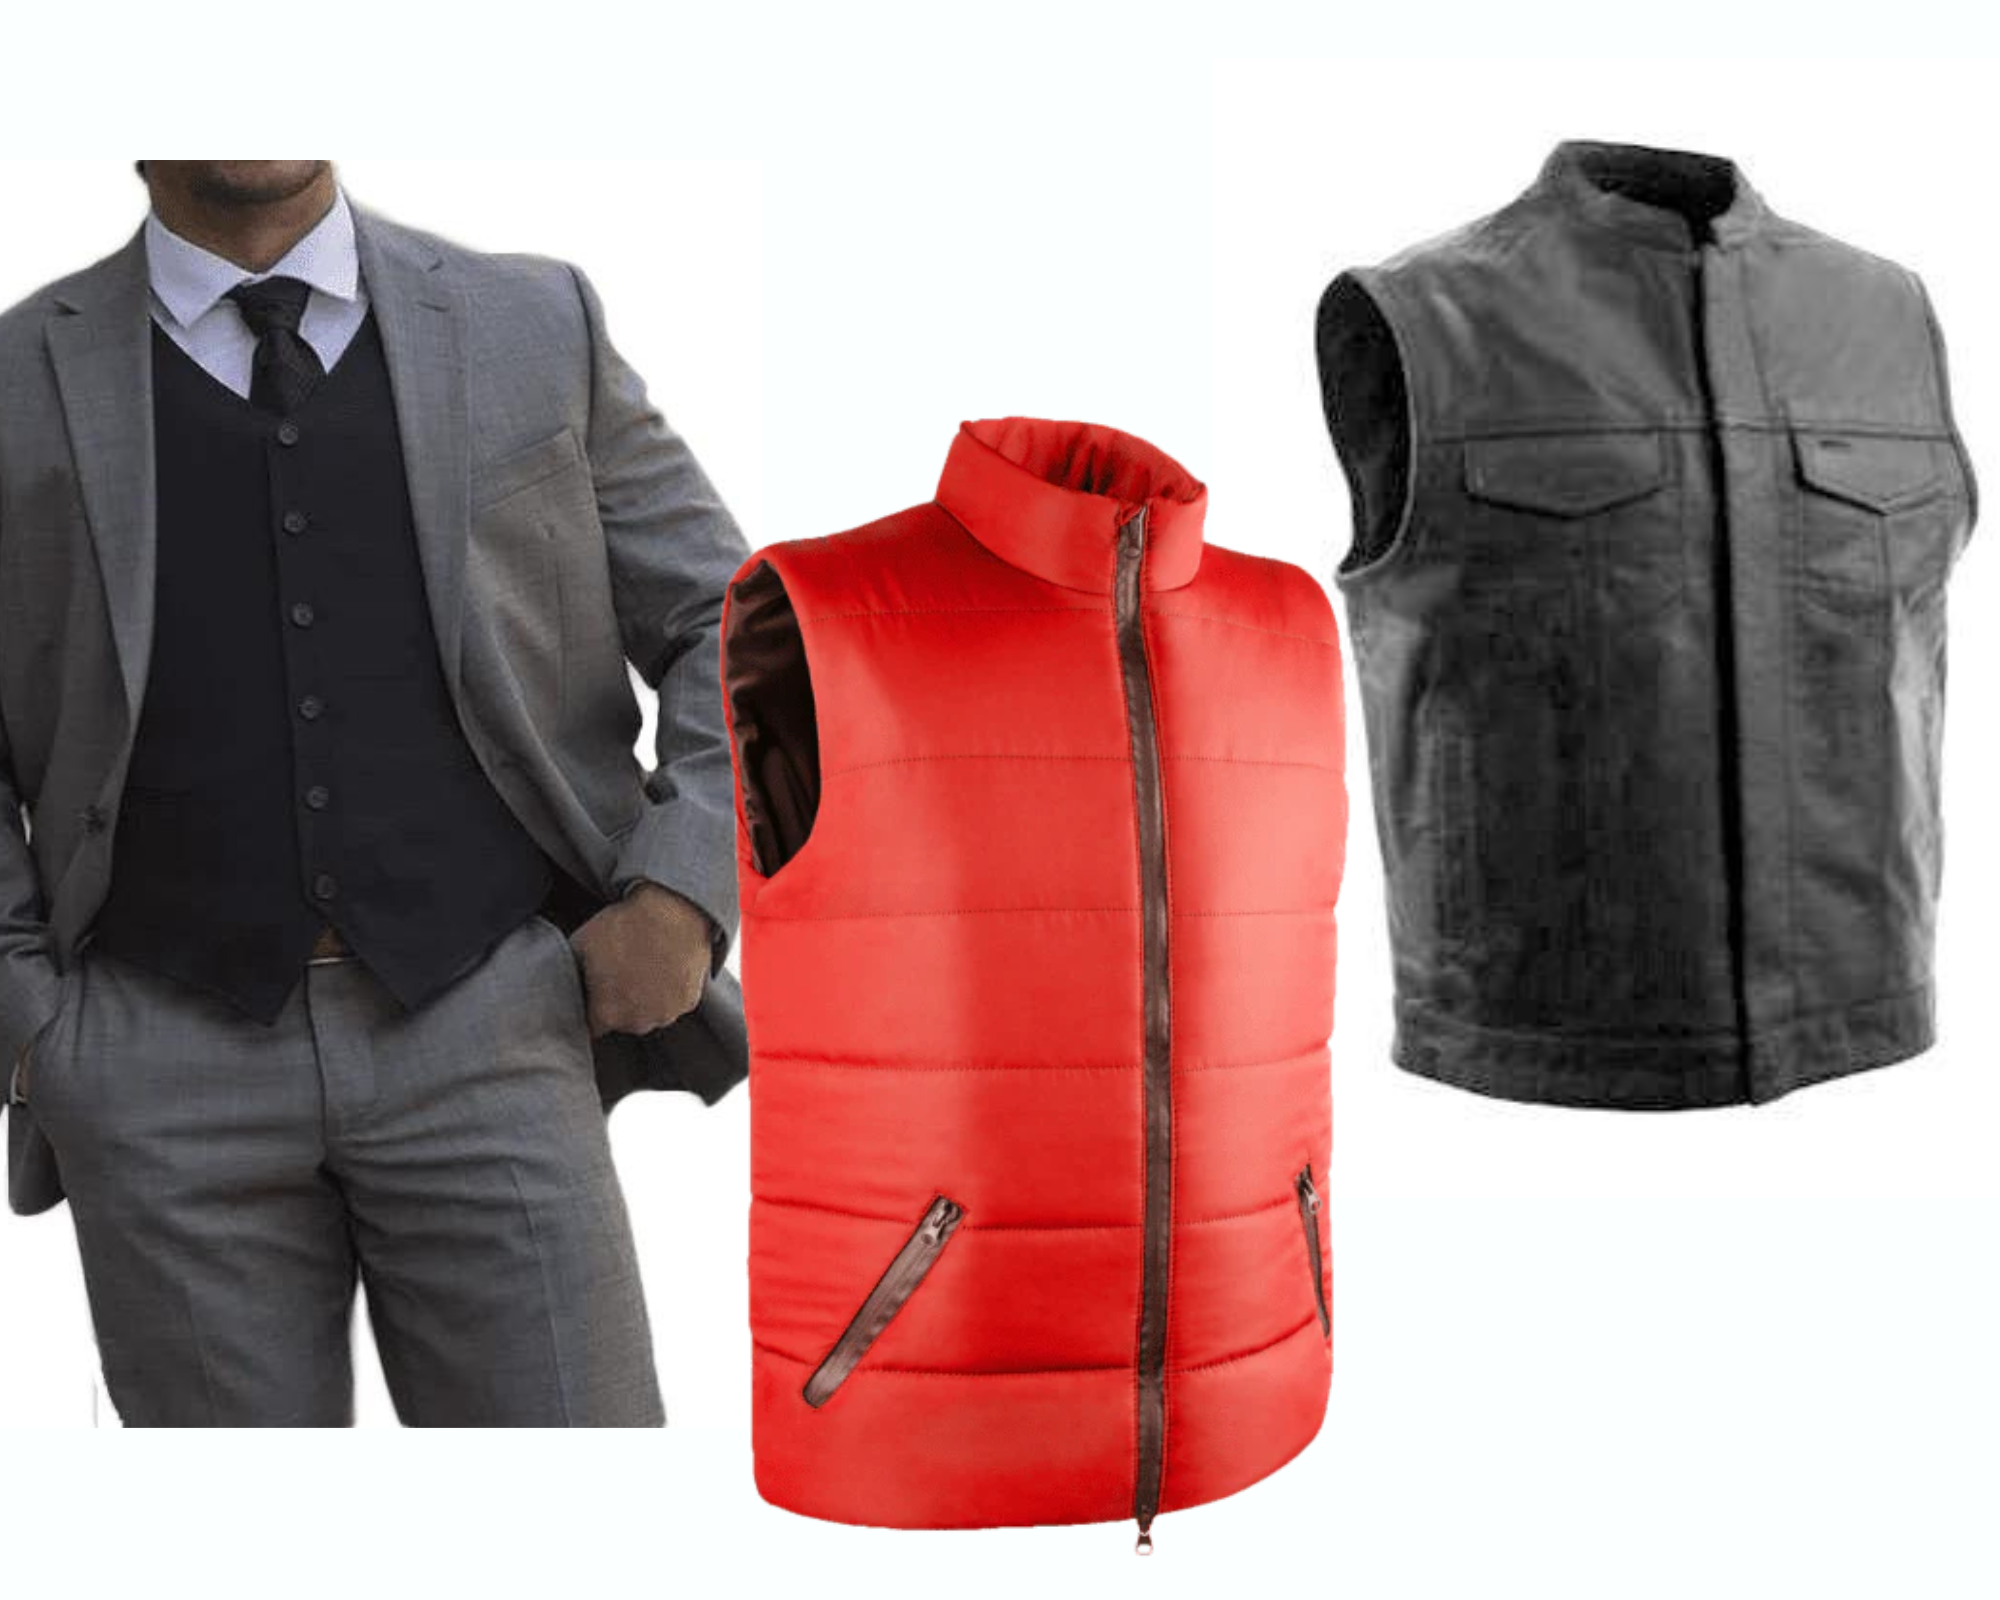 dress vest, puffer vest, and biker vest